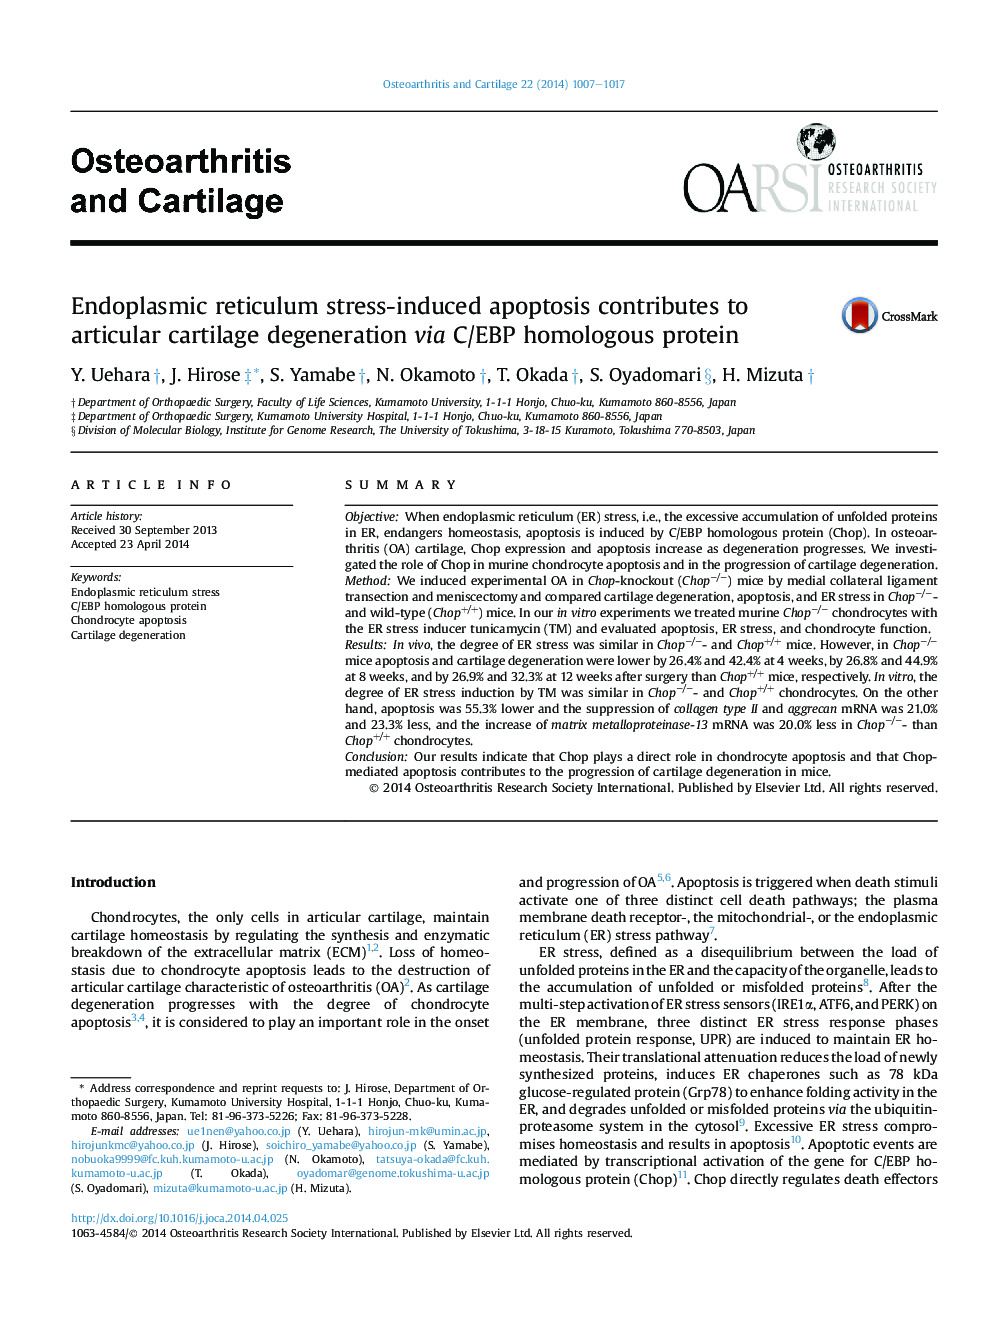 Endoplasmic reticulum stress-induced apoptosis contributes to articular cartilage degeneration via C/EBP homologous protein